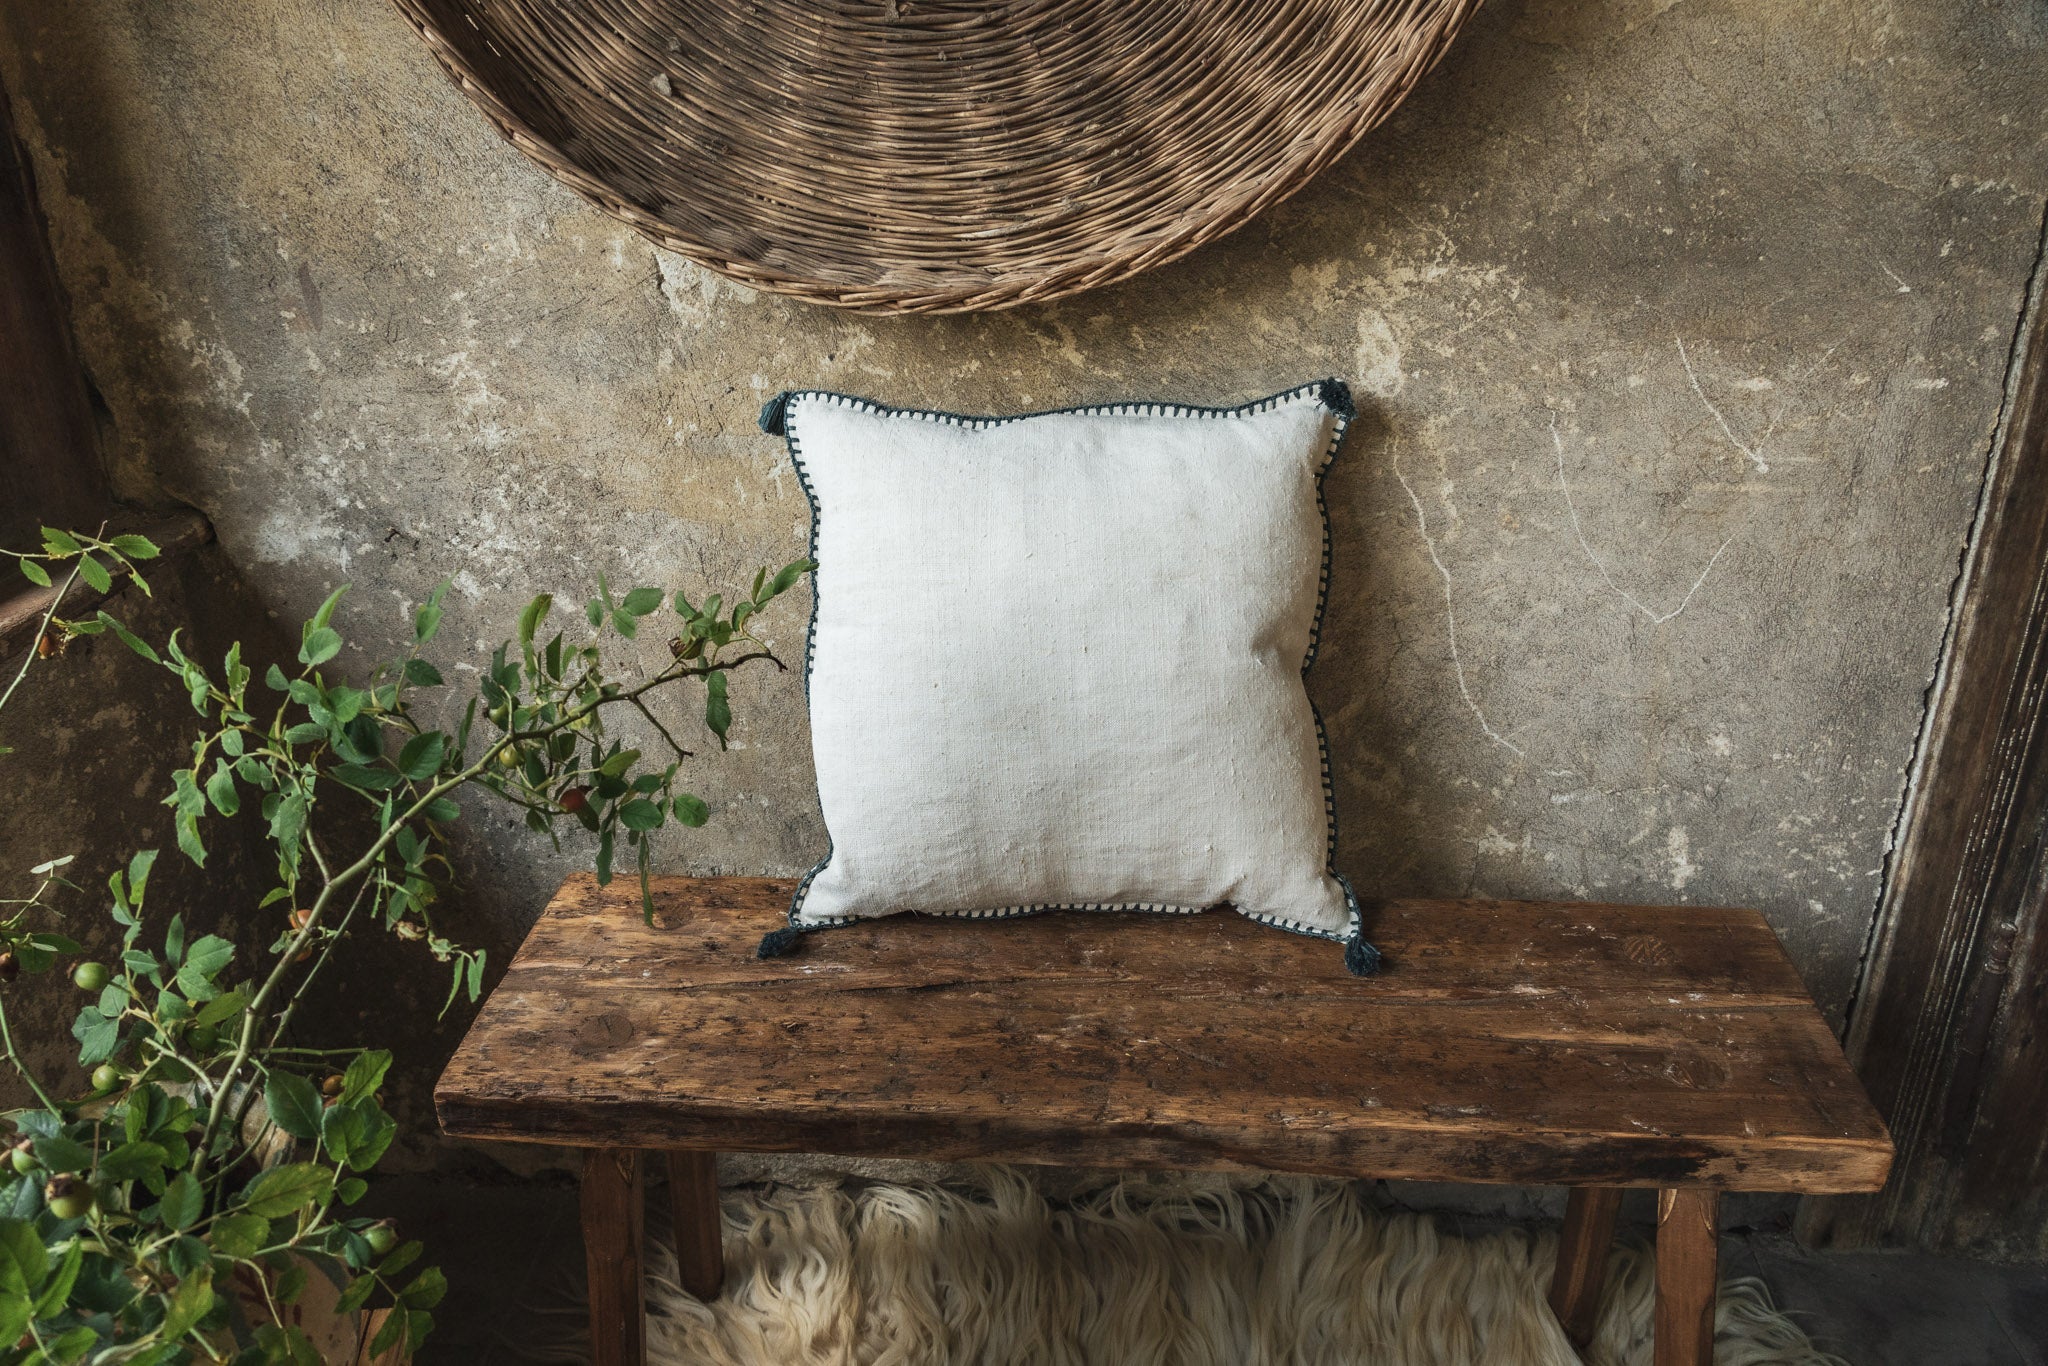 Pillow: Antique handwoven decorative pillow - P387